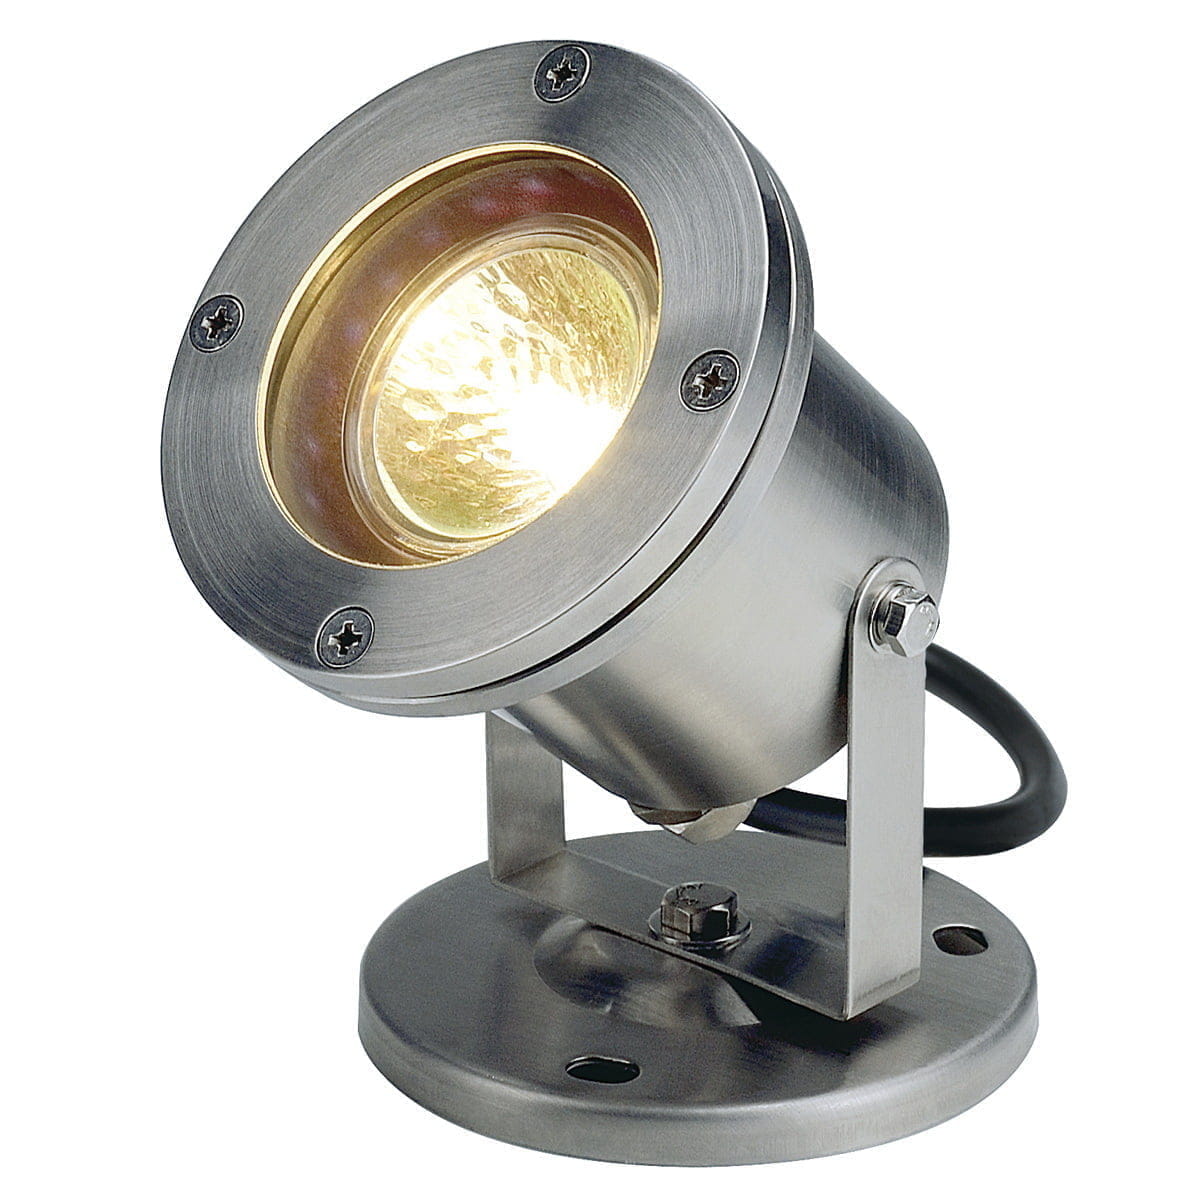 Подсветка уличная светильники. Прожектор галогенный SLV Nautilus 35w 229090. Прожектор SLV Nautilus 1001965. Прожектор SLV 1001633. Прожектор SLV 1001635.